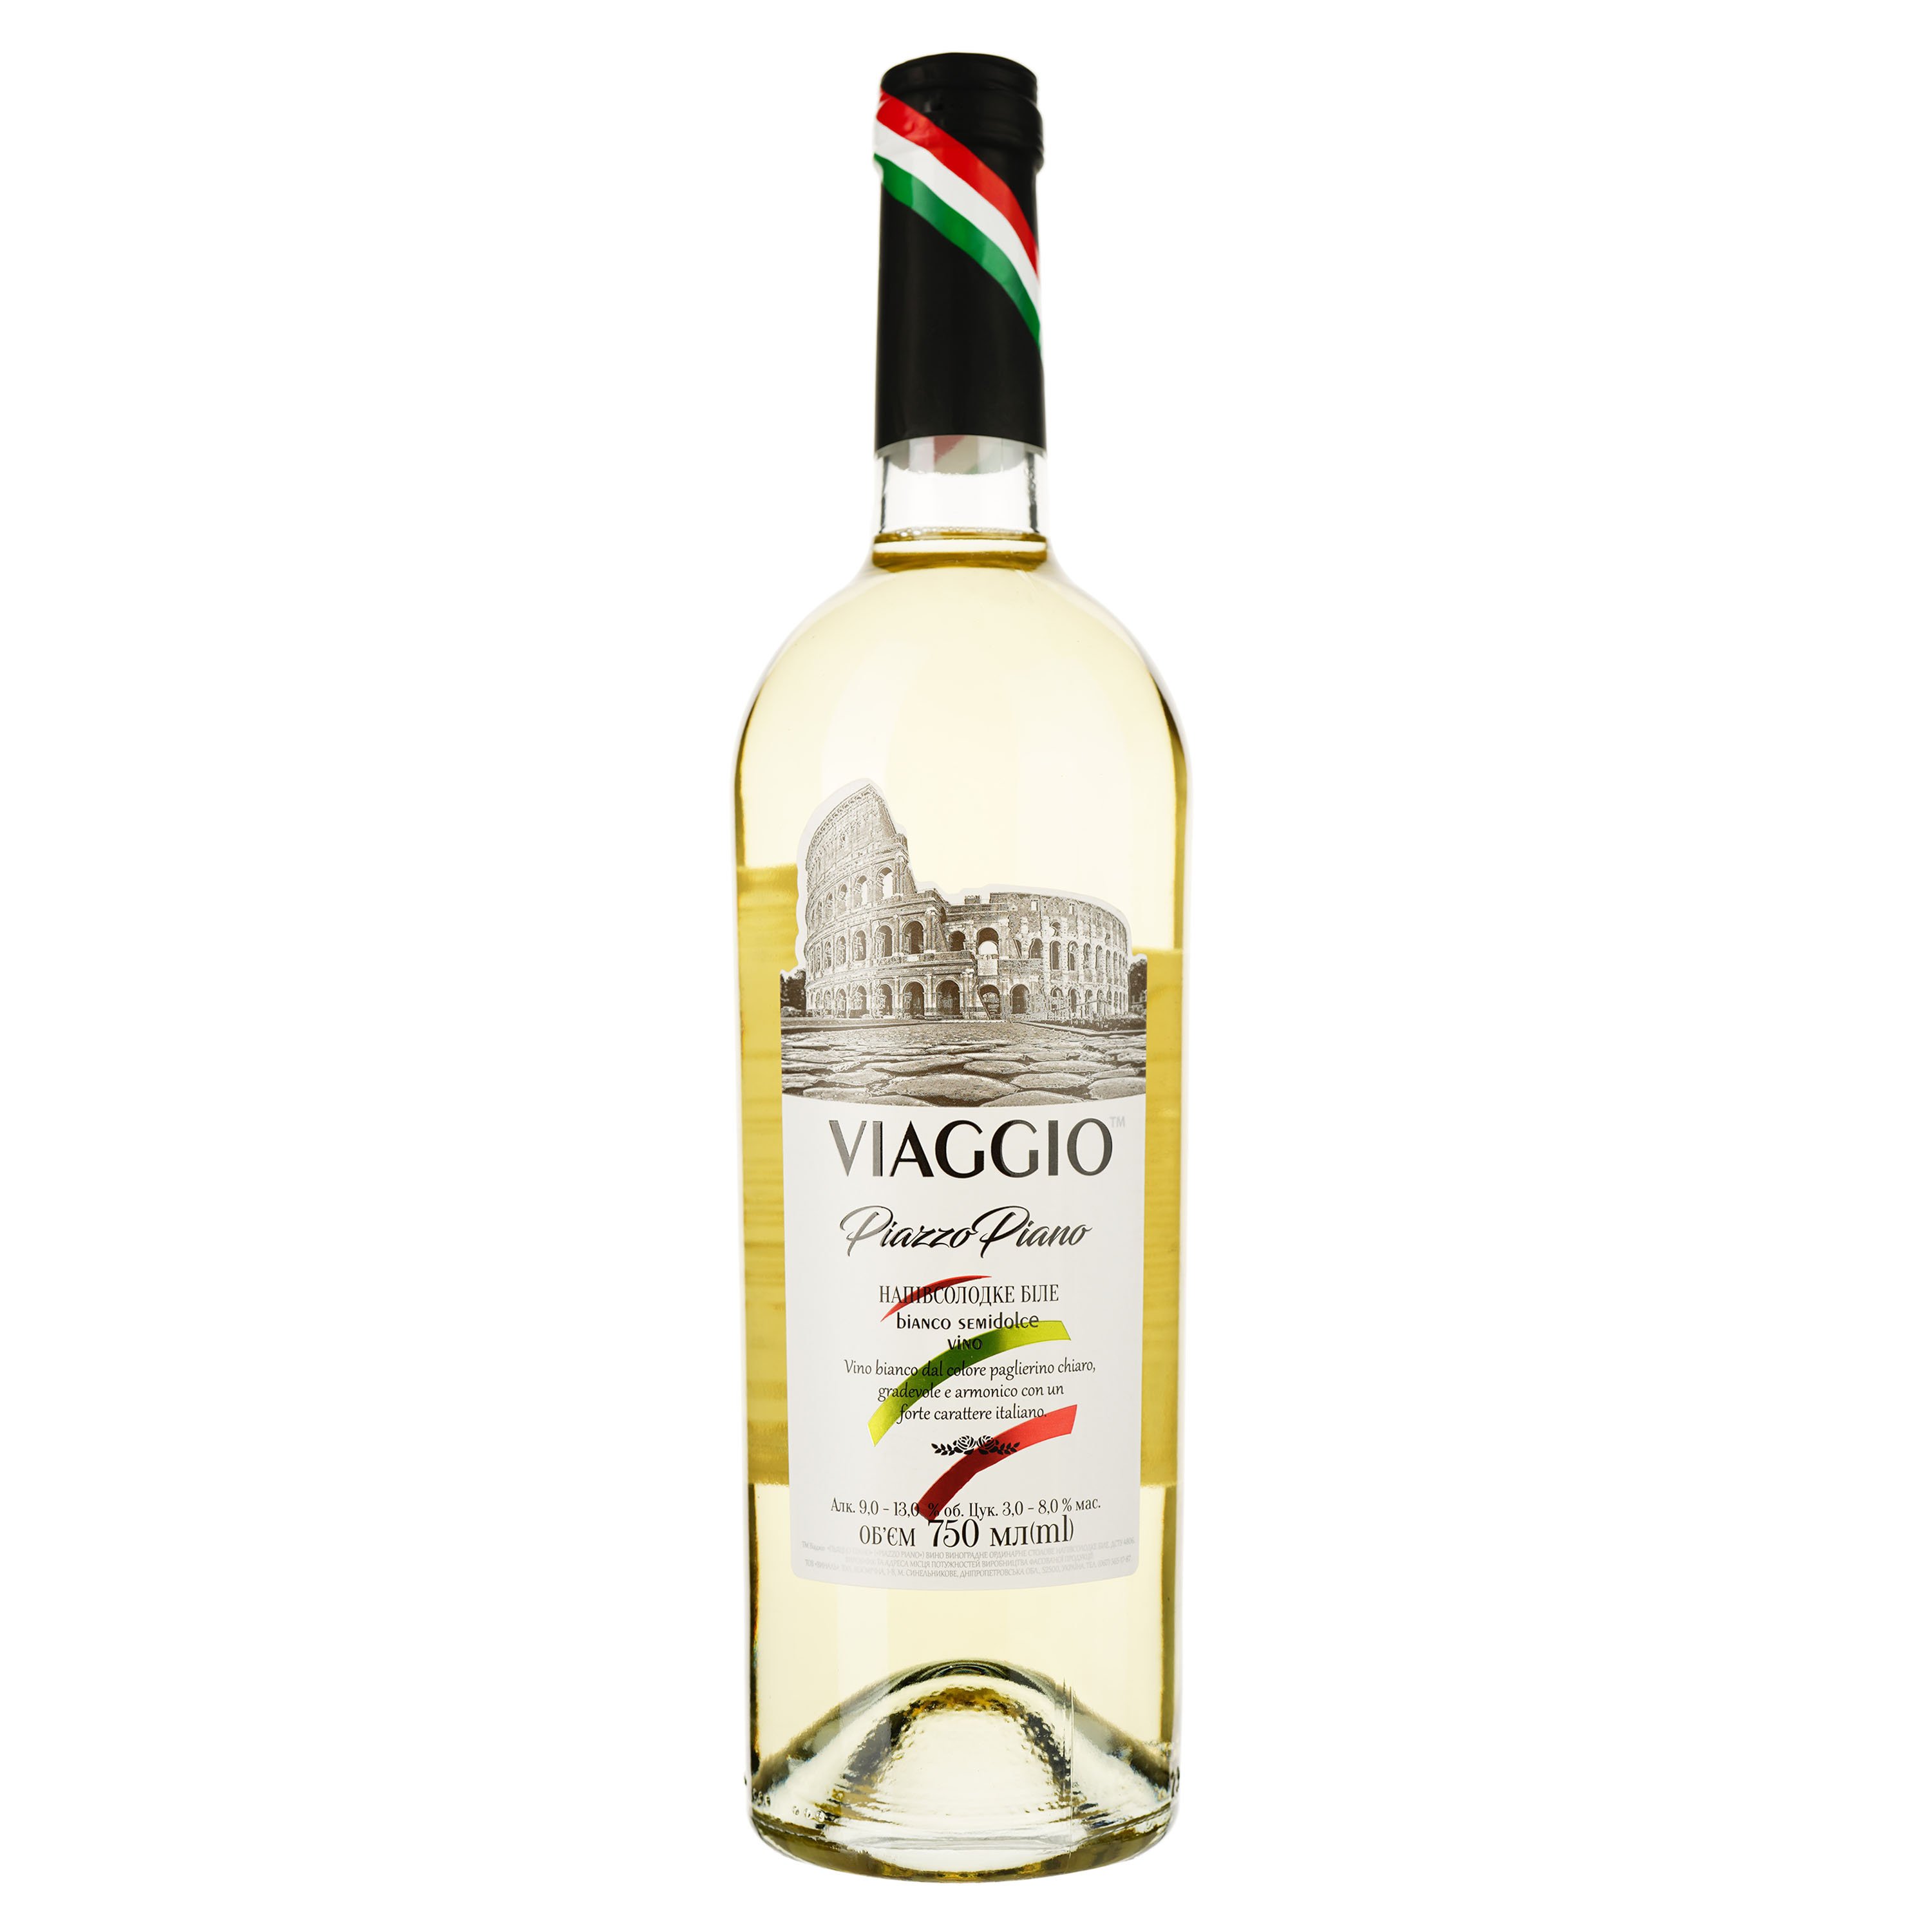 Вино Viaggio Piazzo Piano, белое, полусладкое, 0,75 л - фото 1